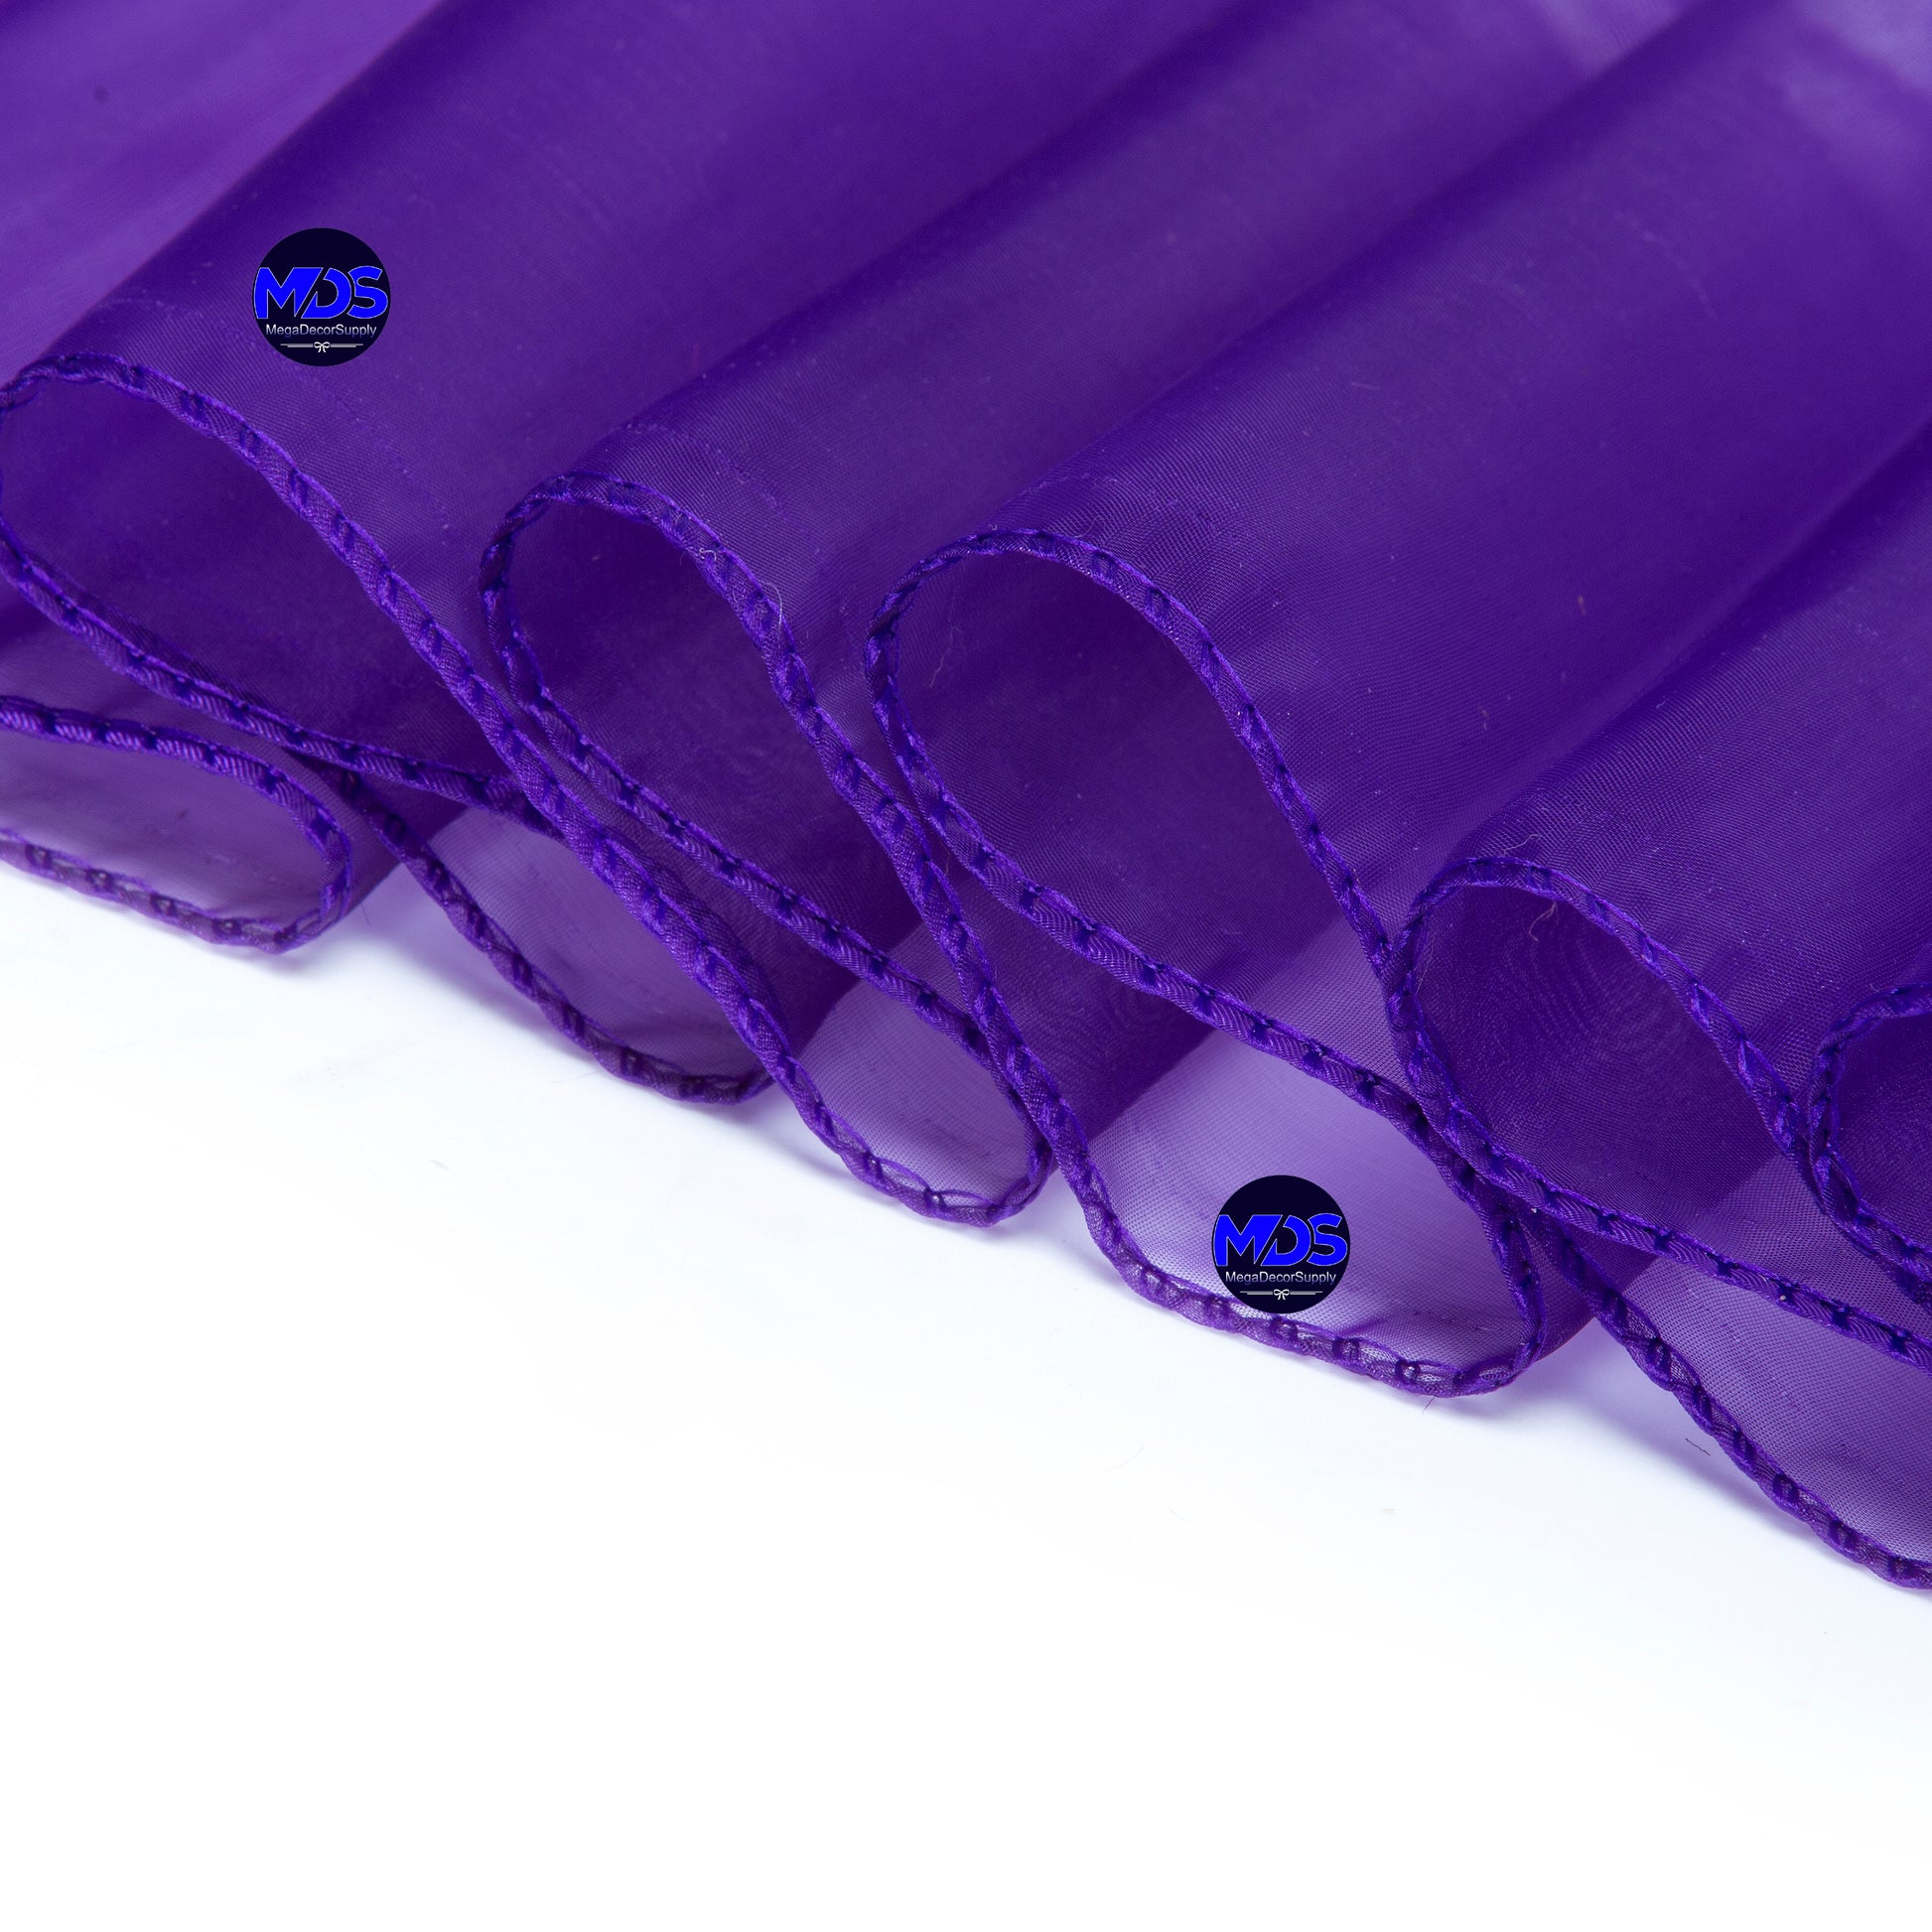 Cadbury Purple,929eff8f-555b-4894-aad0-d463d035f363